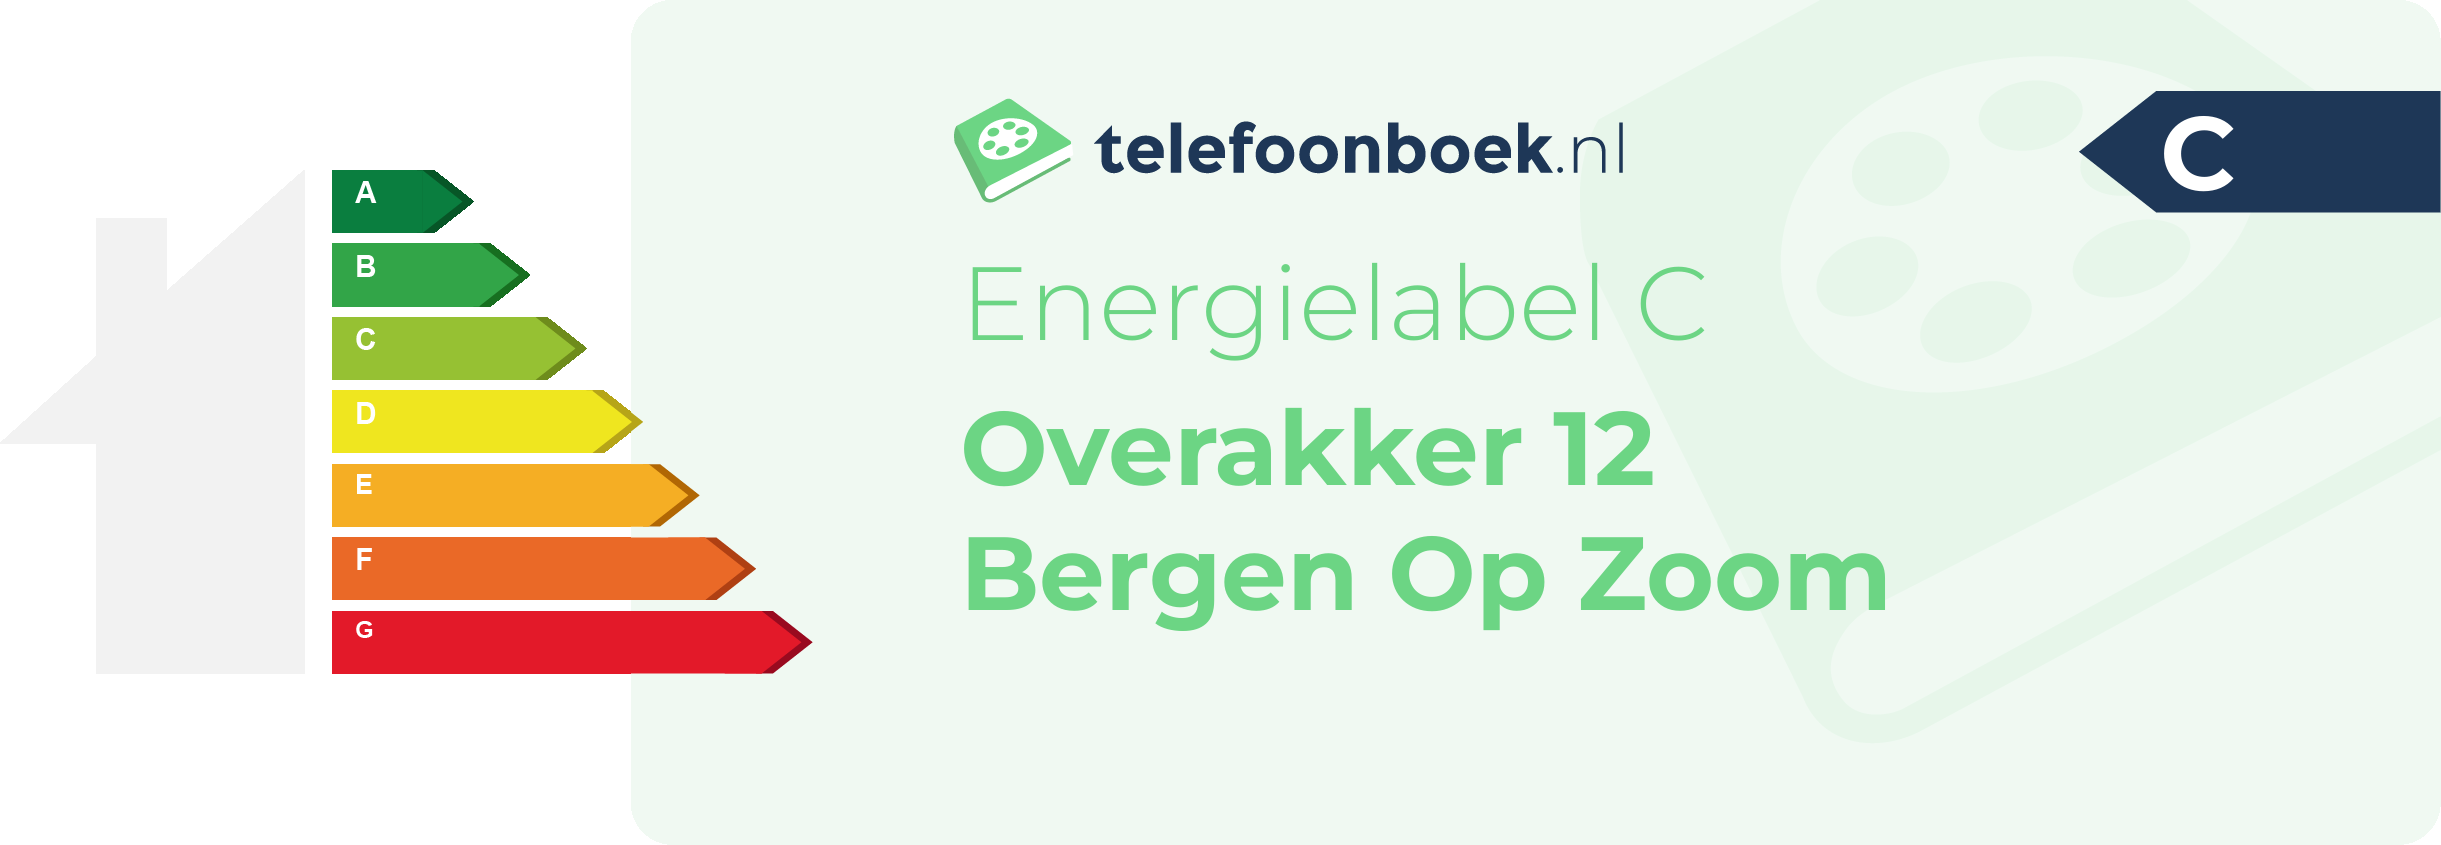 Energielabel Overakker 12 Bergen Op Zoom